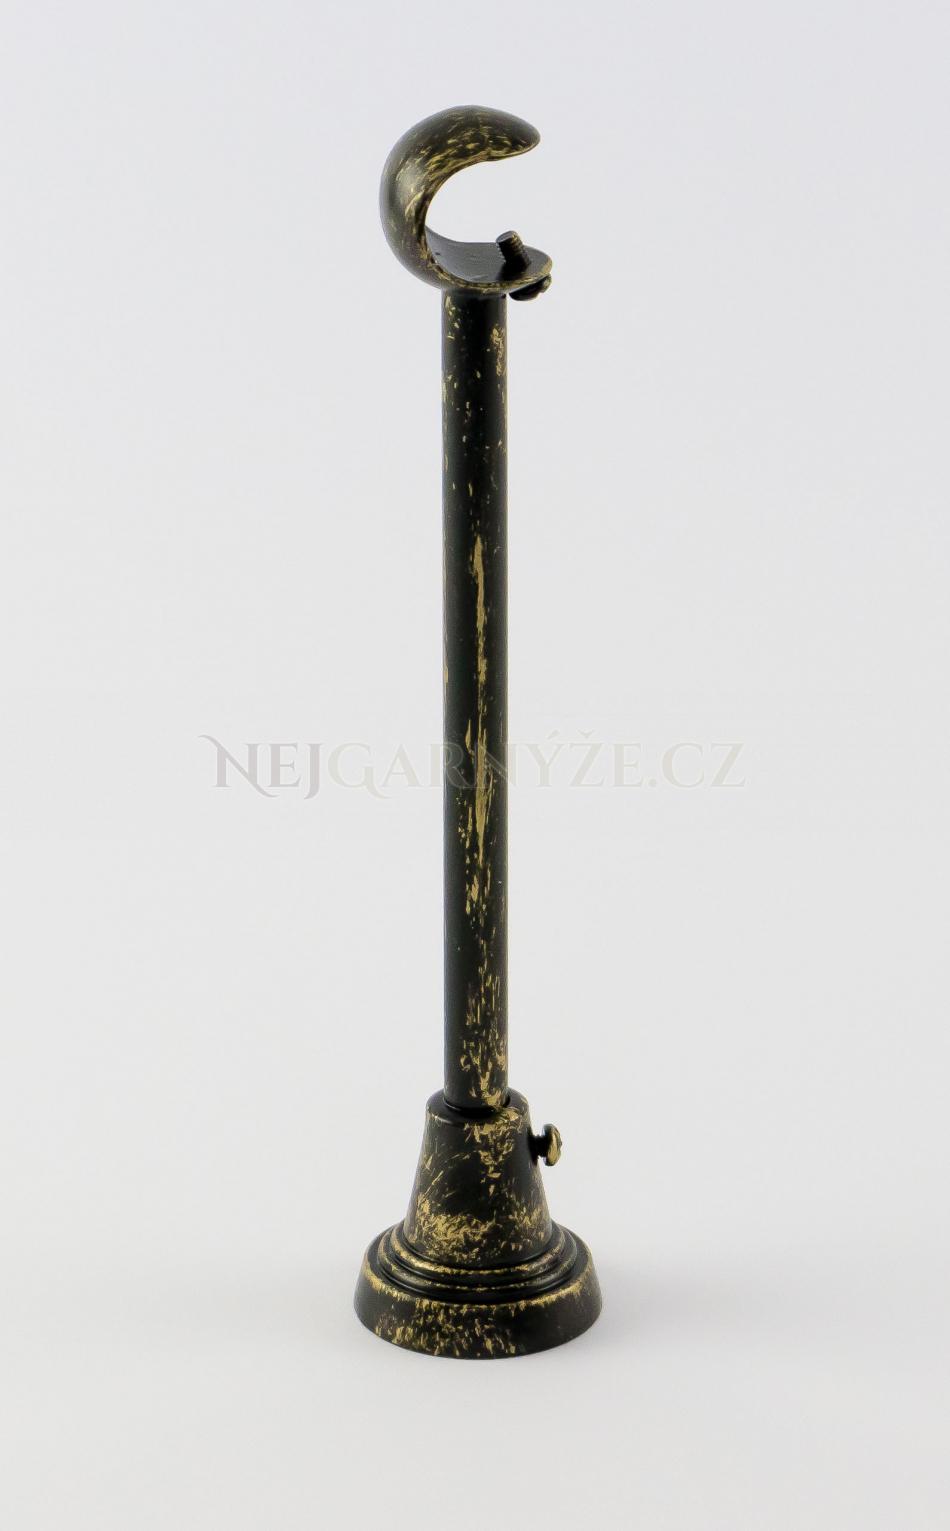 Patinovaný kovový držák jednotyčový Ø 16 mm Černo-zlatá